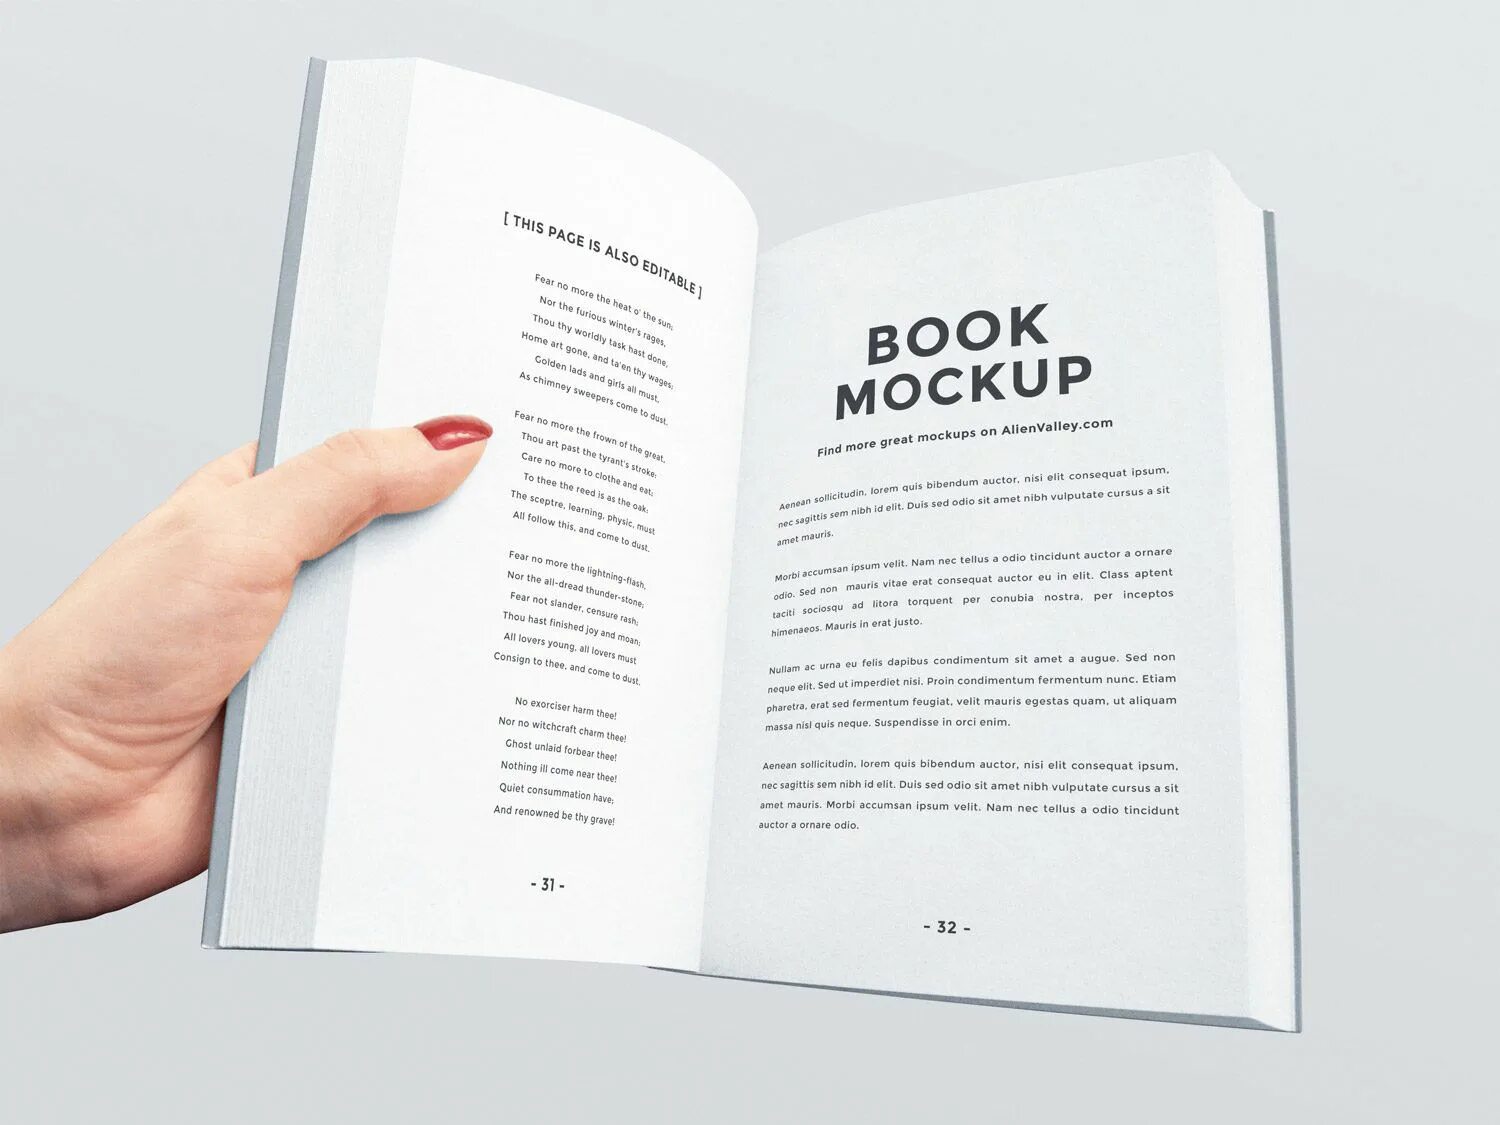 Как будет открыть книгу. Верстка книги. Мокап книги. Дизайн обложки книги раскрытая. Открытая книга Mockup.